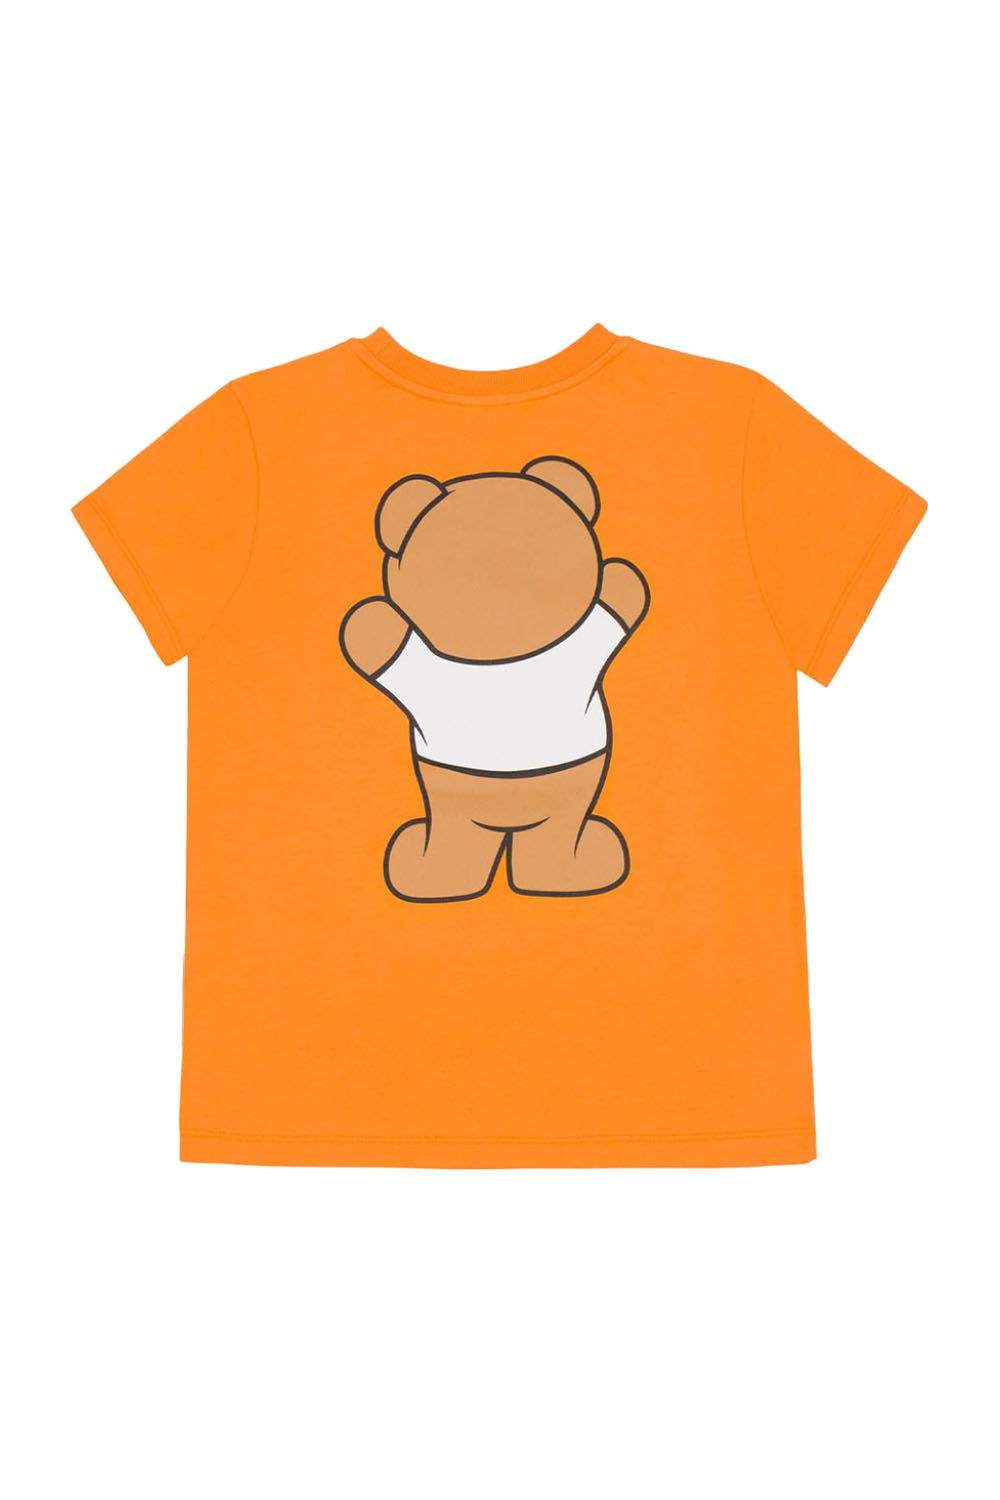 Orange Teddy T Shirt for Boys